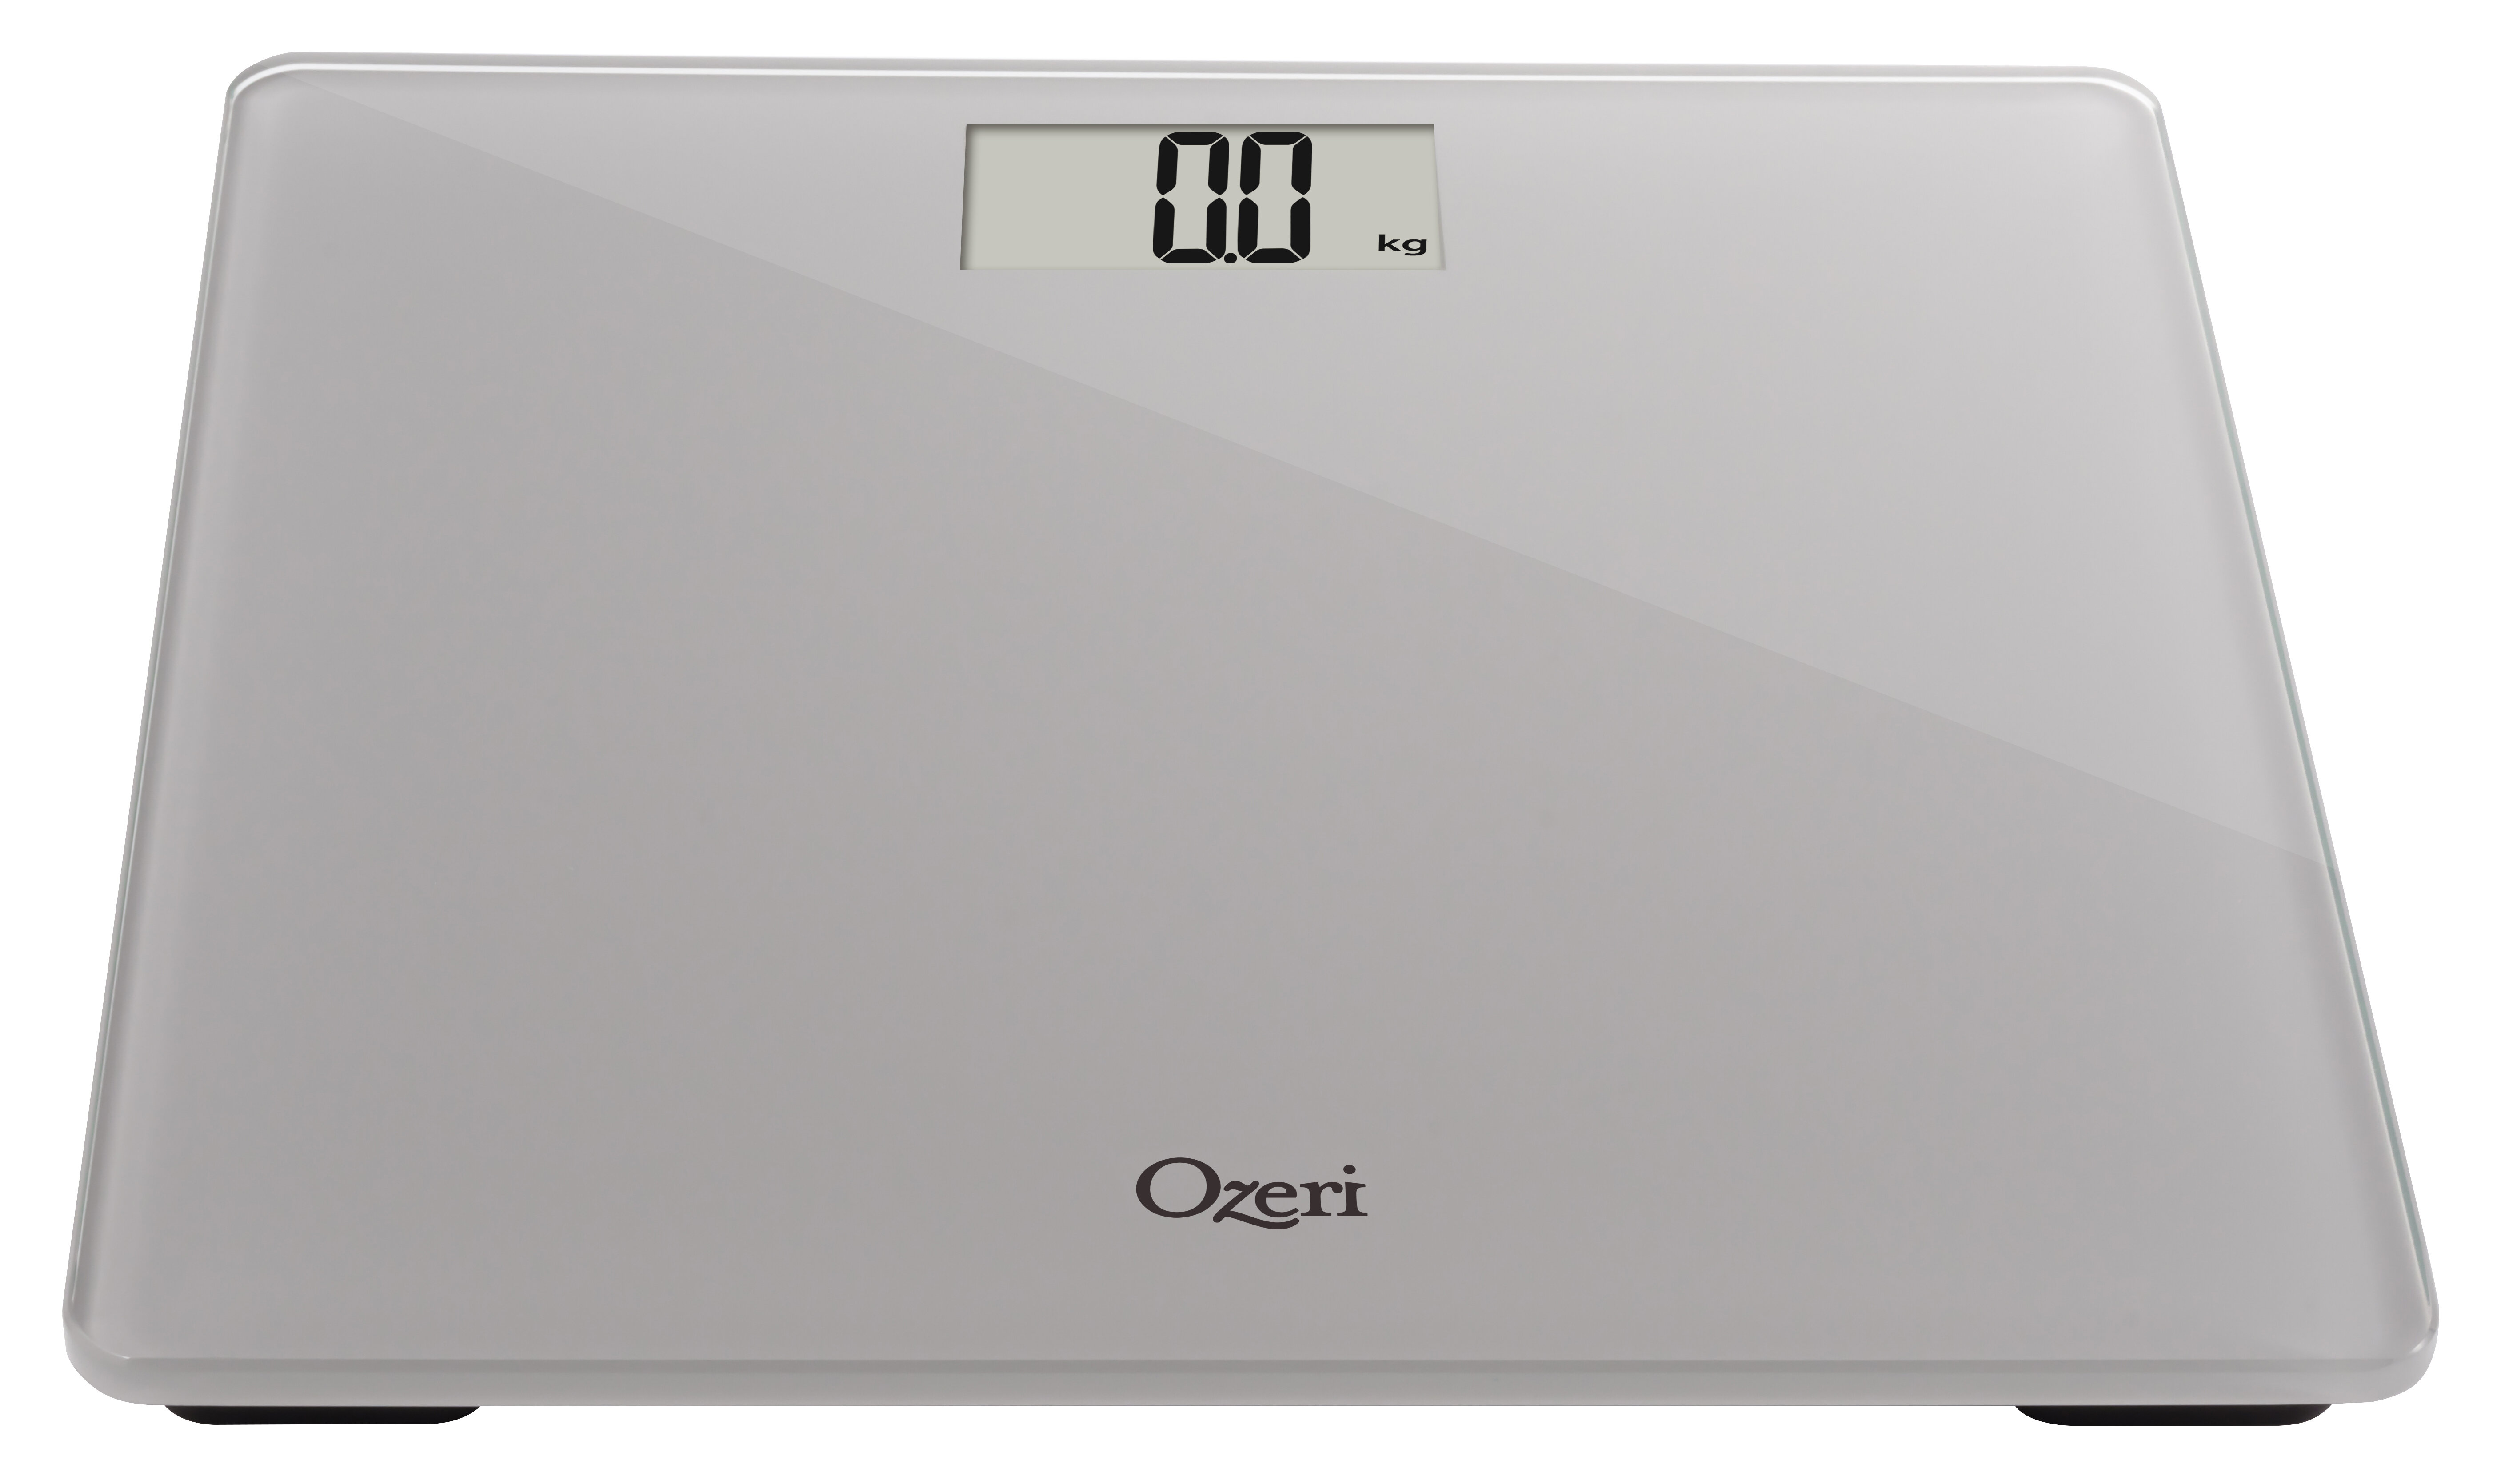 Ozeri Precision Bath Scale in Tempered Glass - Grey